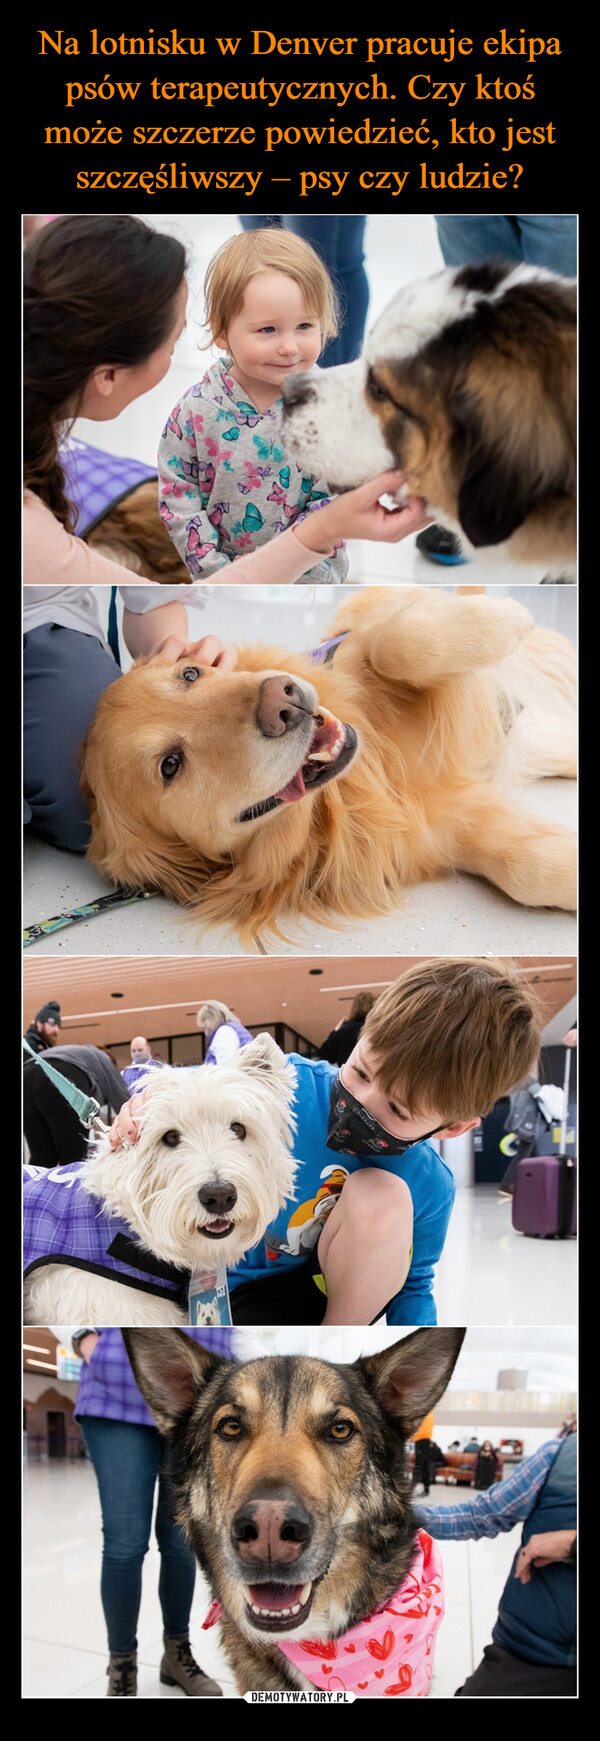 Na lotnisku w Denver pracuje ekipa psów terapeutycznych. Czy ktoś może szczerze powiedzieć, kto jest szczęśliwszy – psy czy ludzie?